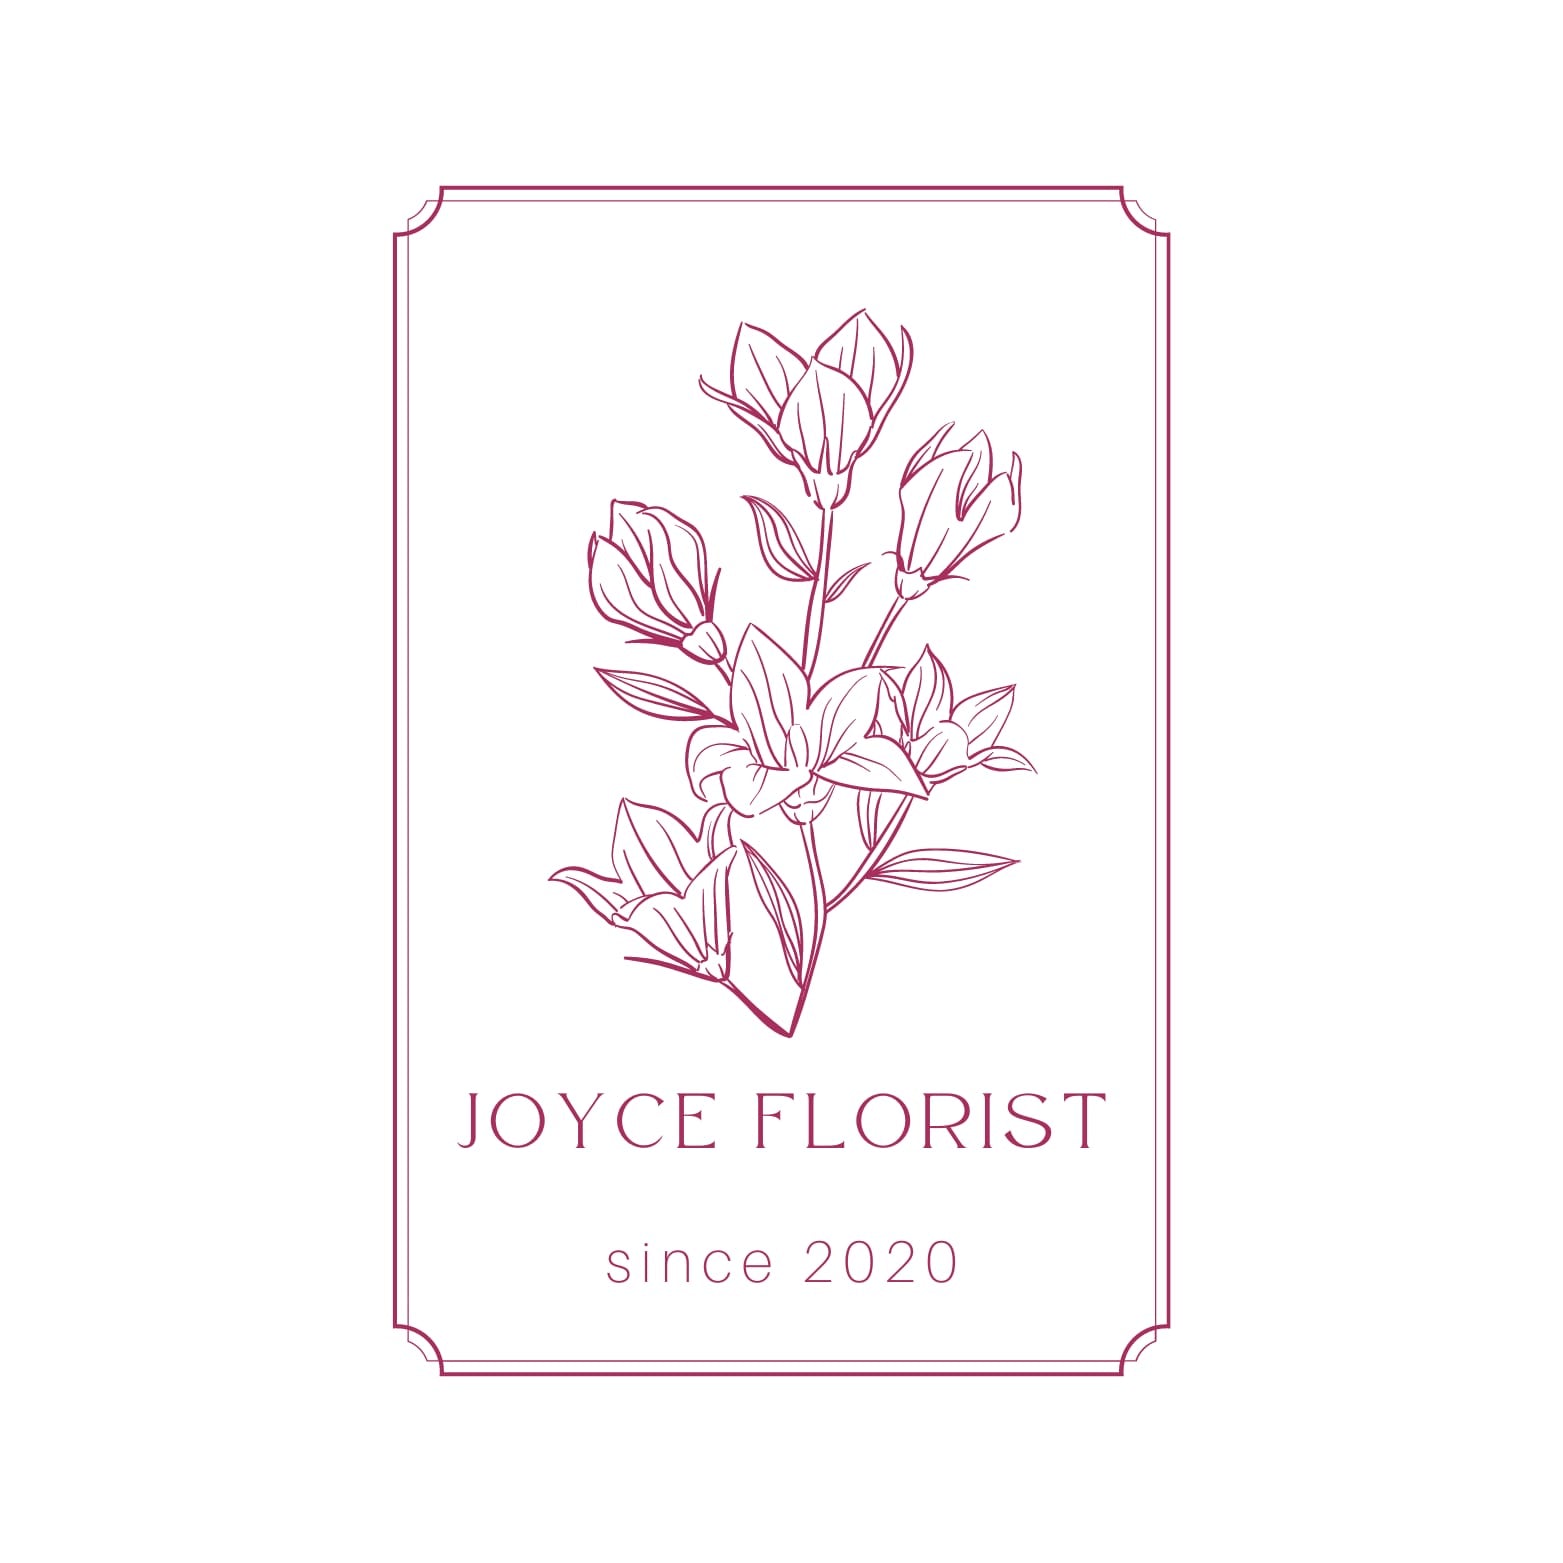 Joyce Florist SG